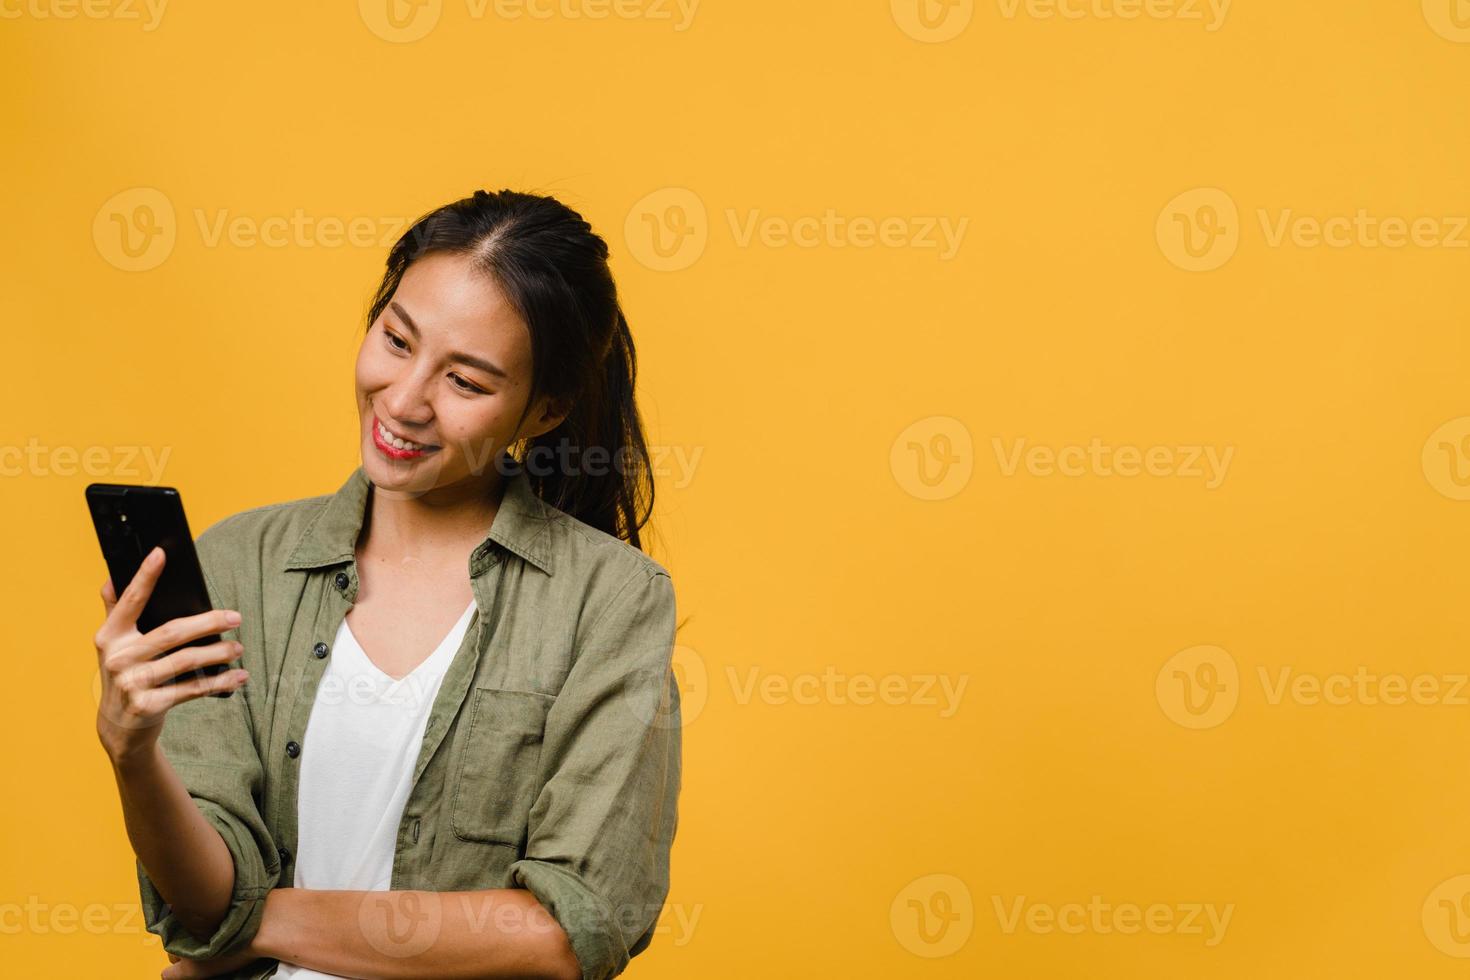 jeune femme asiatique utilisant un téléphone avec une expression positive, sourit largement, vêtue de vêtements décontractés, se sentant heureuse et isolée sur fond jaune. heureuse adorable femme heureuse se réjouit du succès. photo